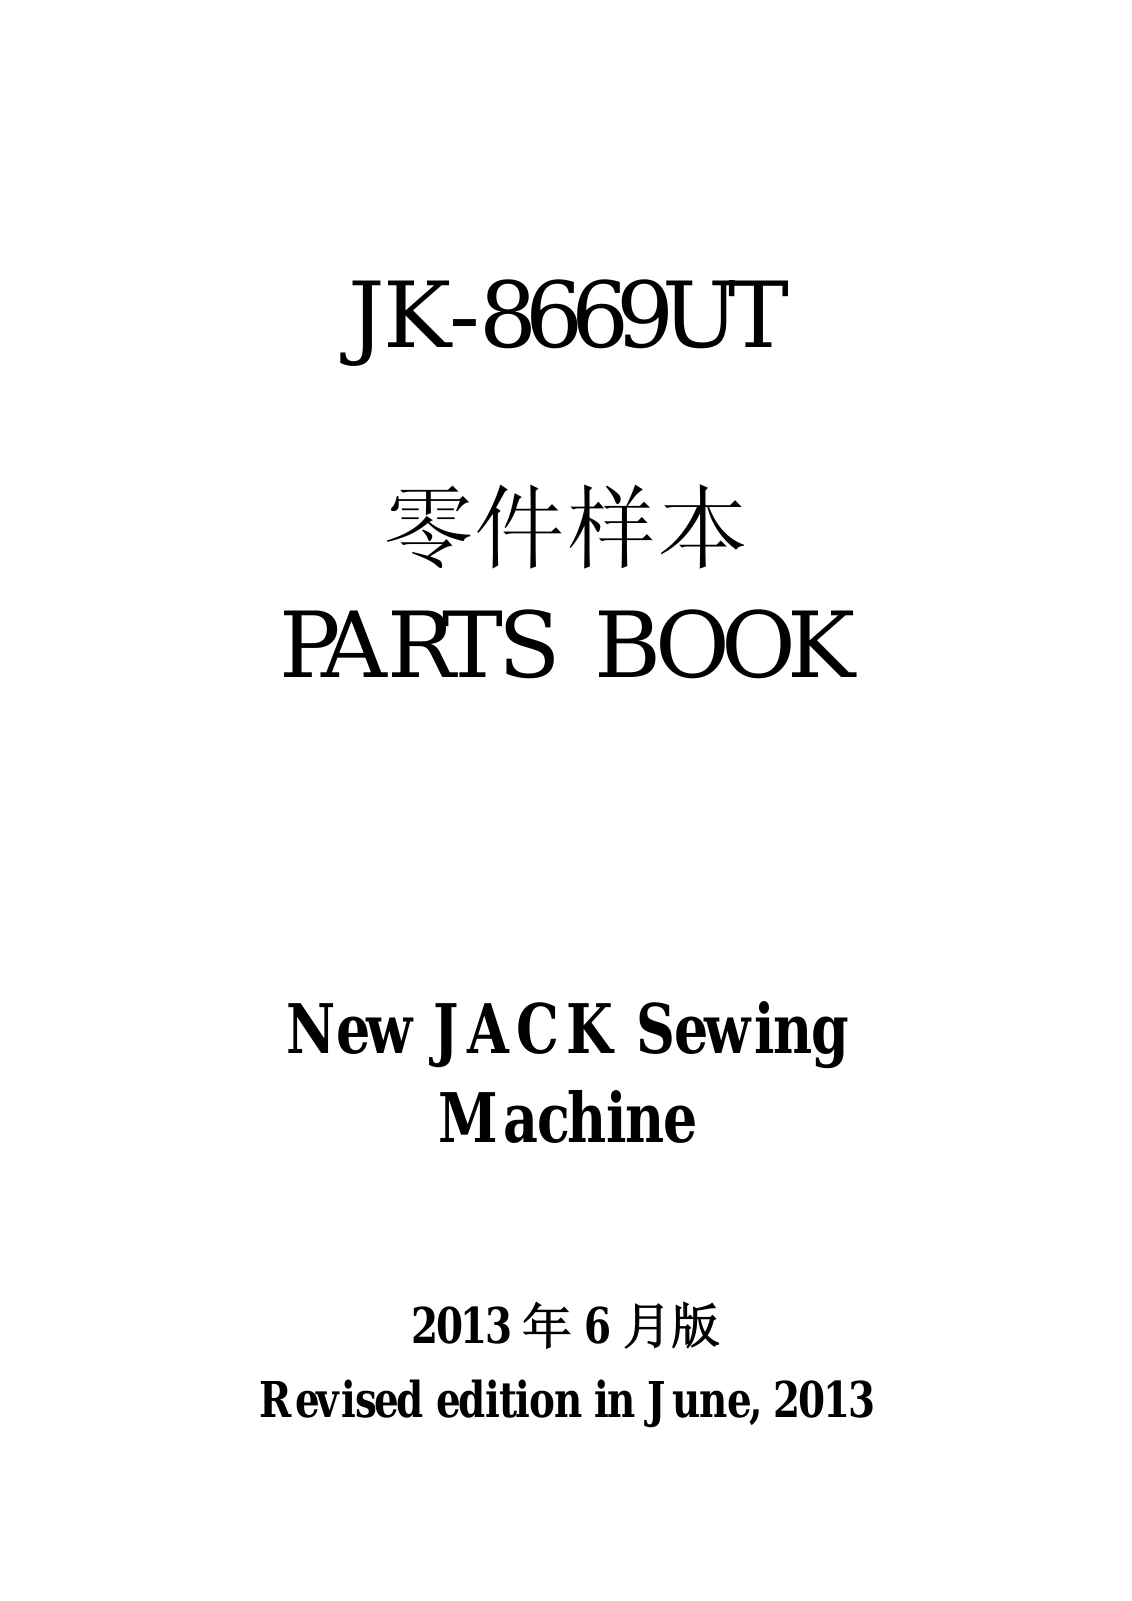 Jack JK-8669UT Parts Book